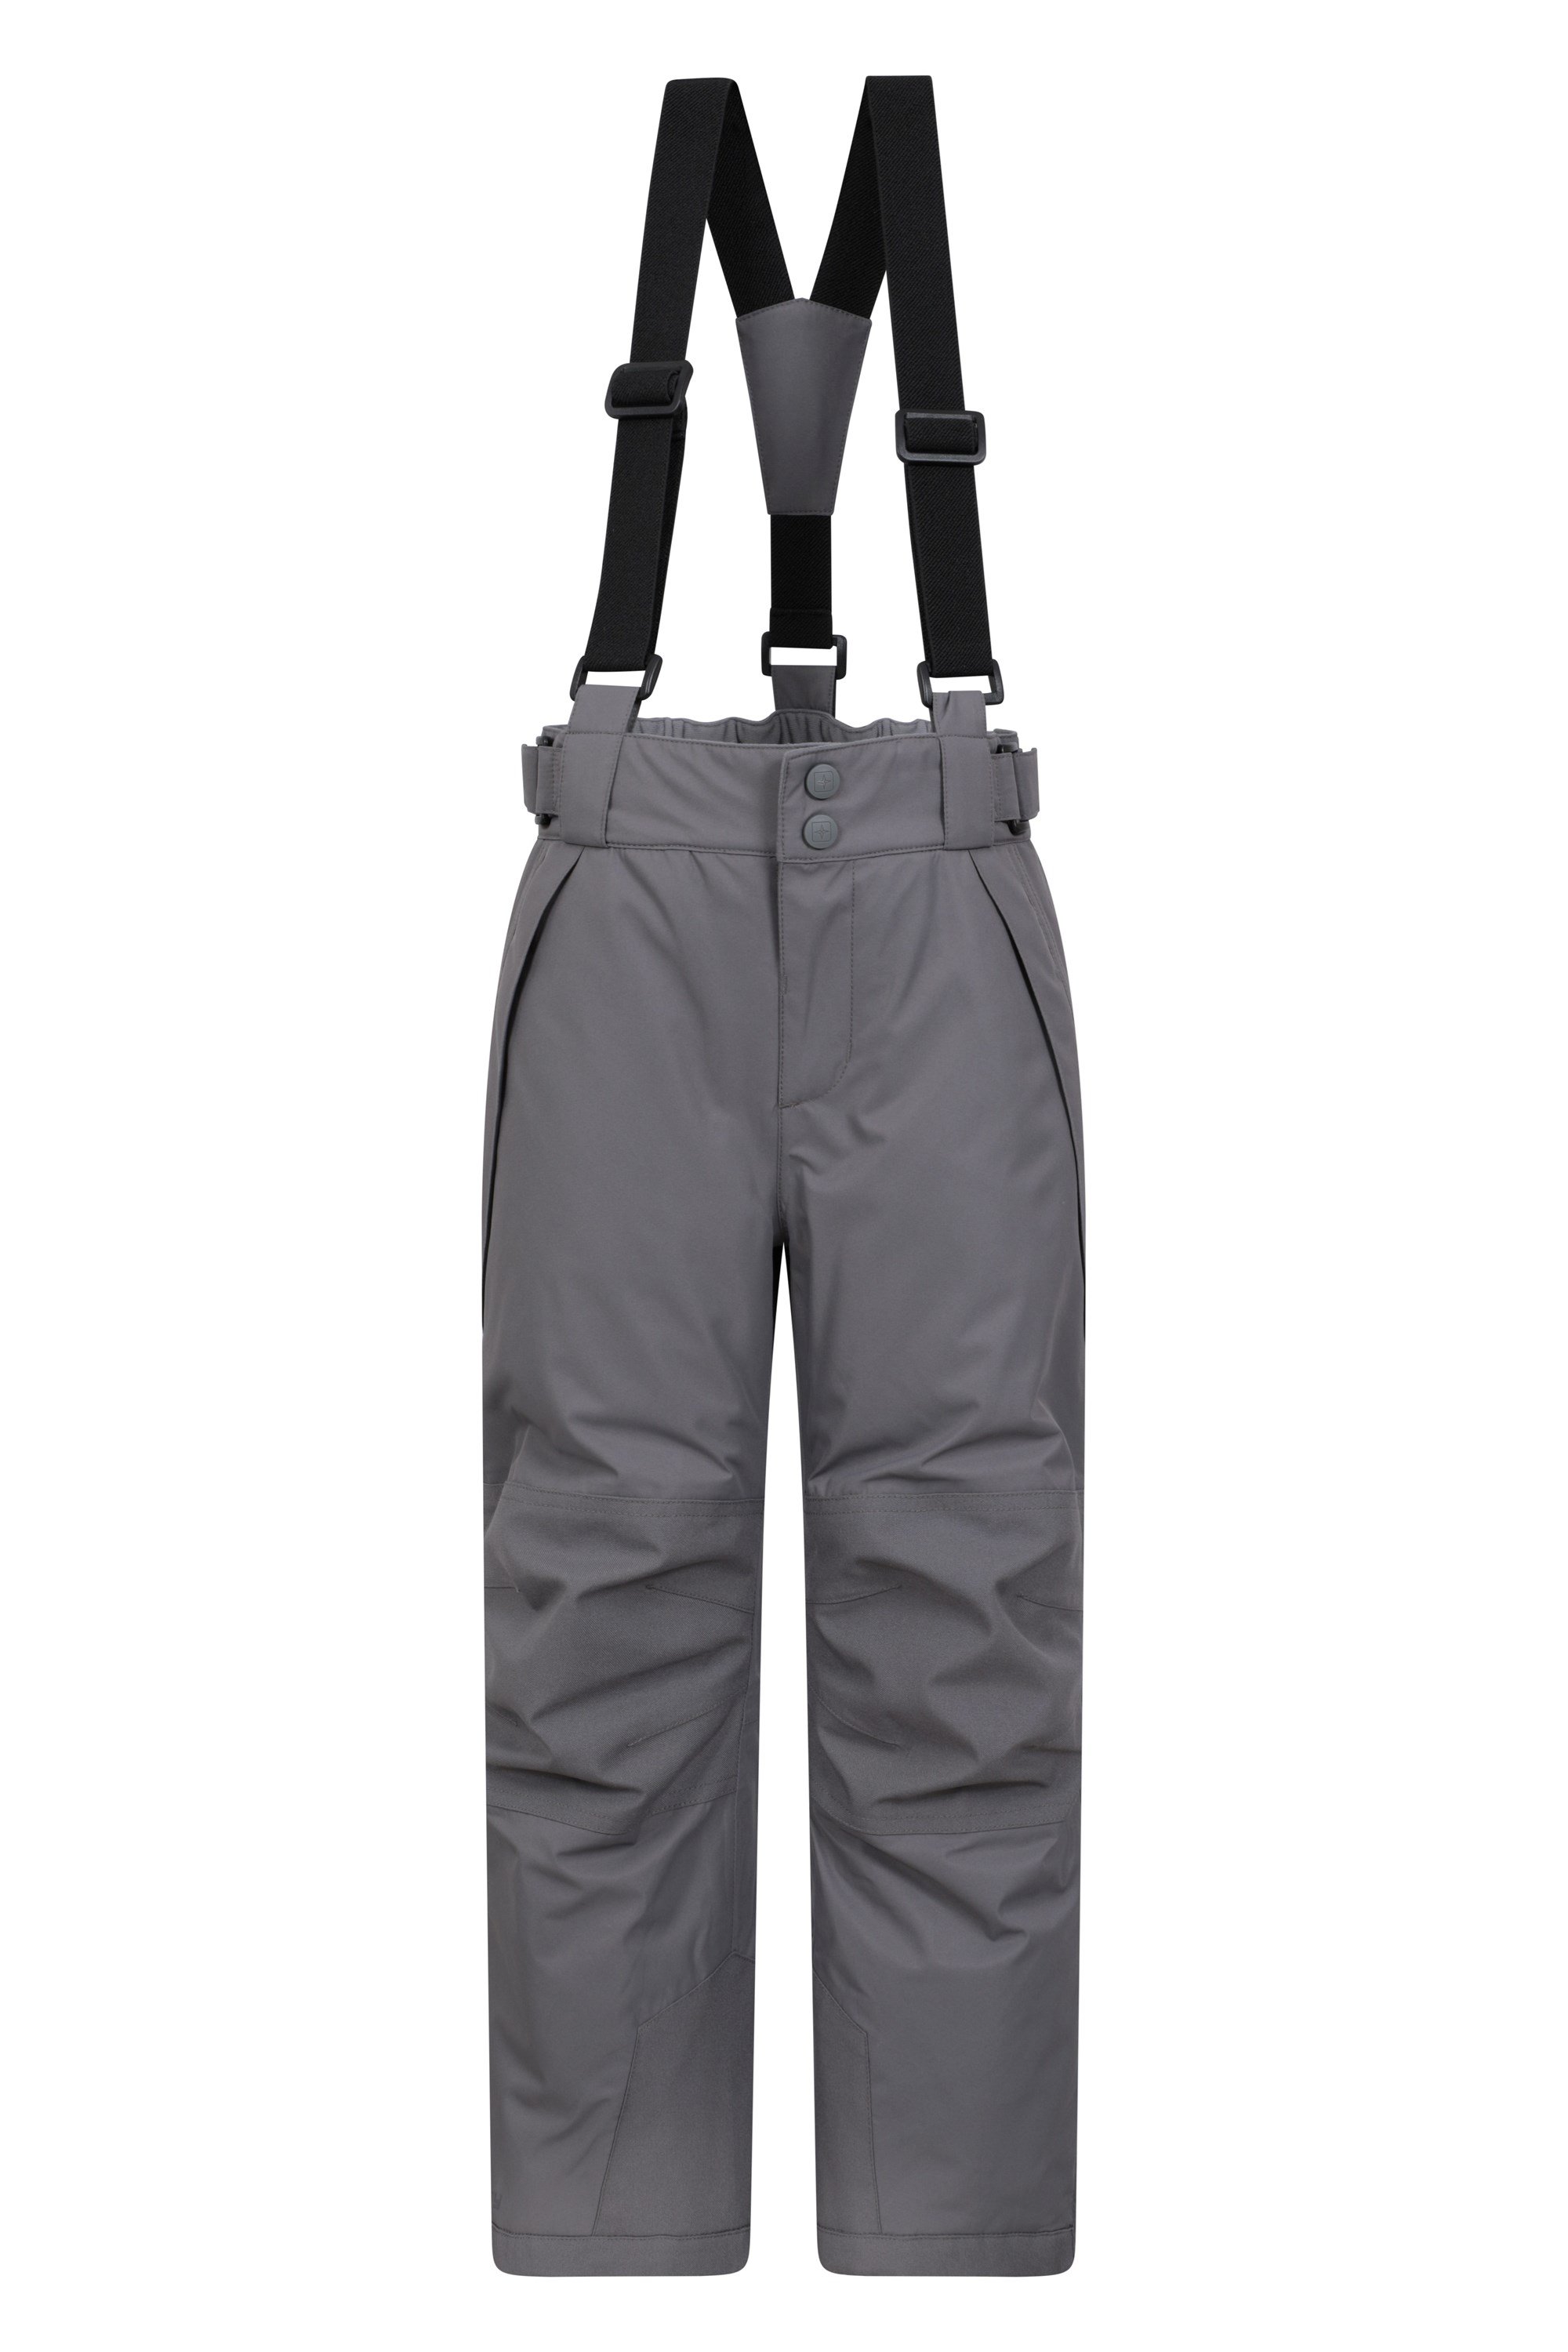 Falcon Extreme Kids Waterproof Ski Pants - Grey